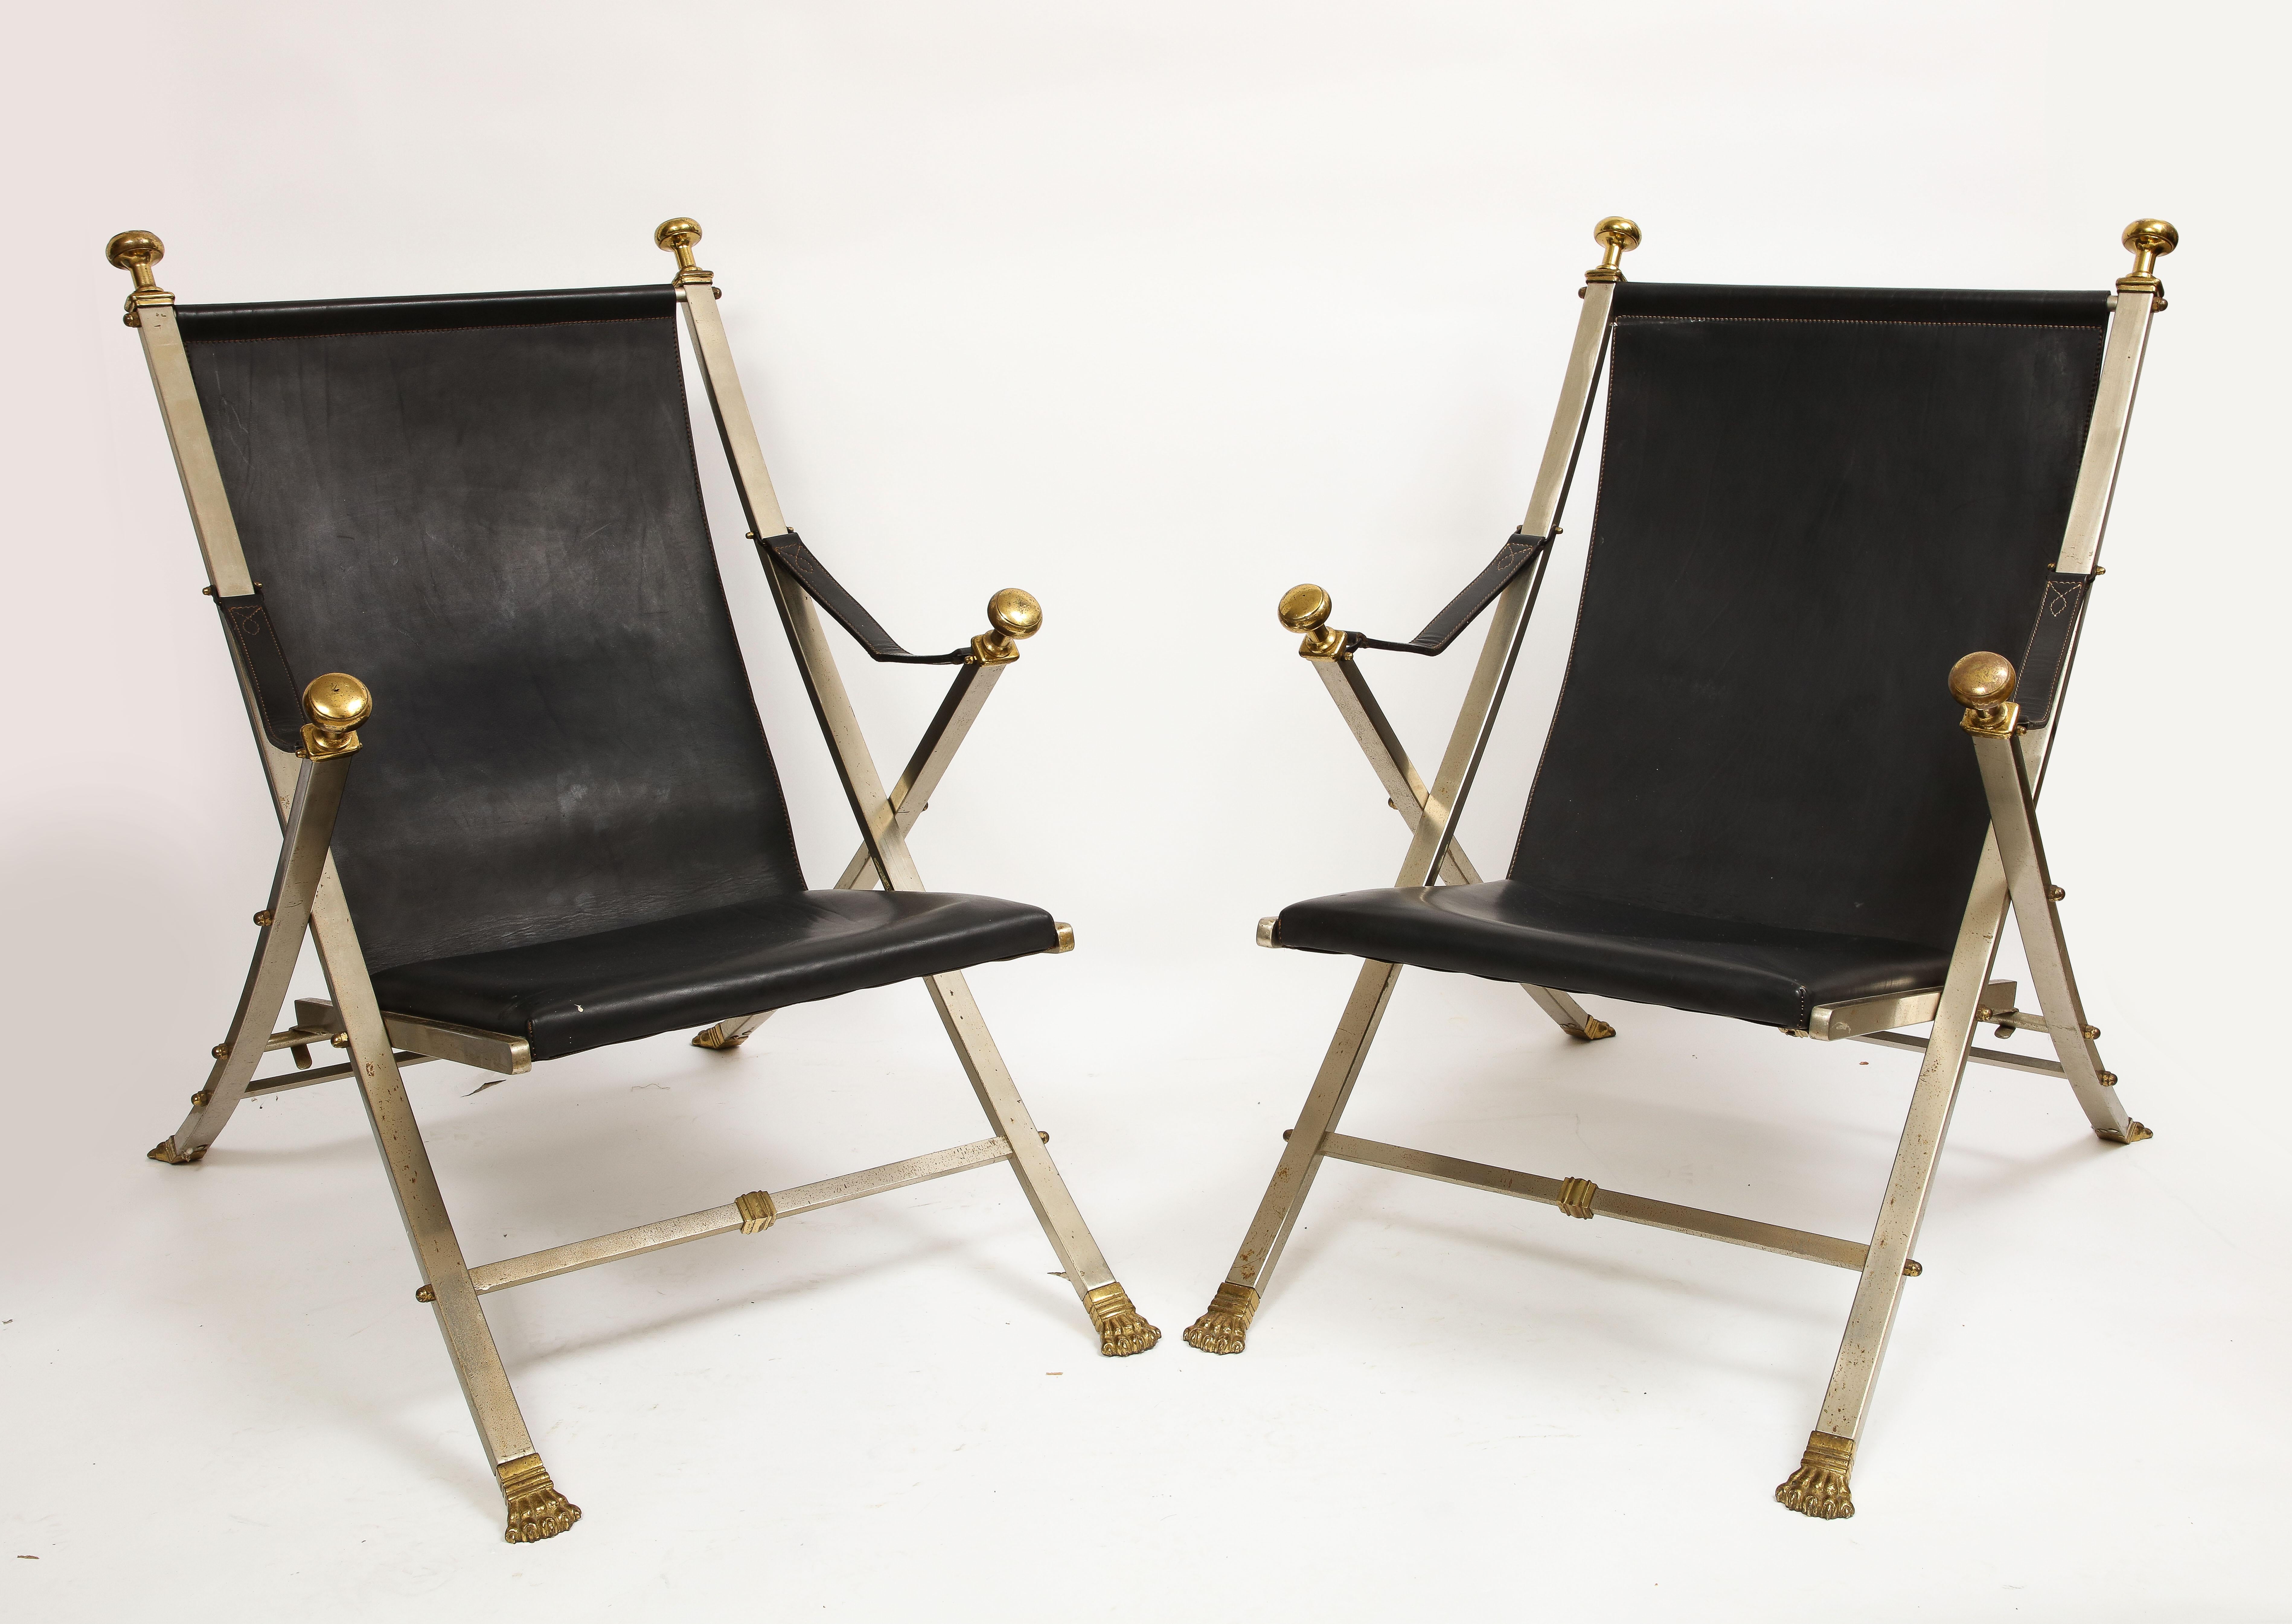 Une paire rare et inhabituelle de chaises pliantes en acier poli et en cuir de la Maison Jansen, datant du milieu du siècle dernier. Chaque pièce est fabriquée à la main avec des détails complexes et un savoir-faire fantastique. Ils sont fabriqués